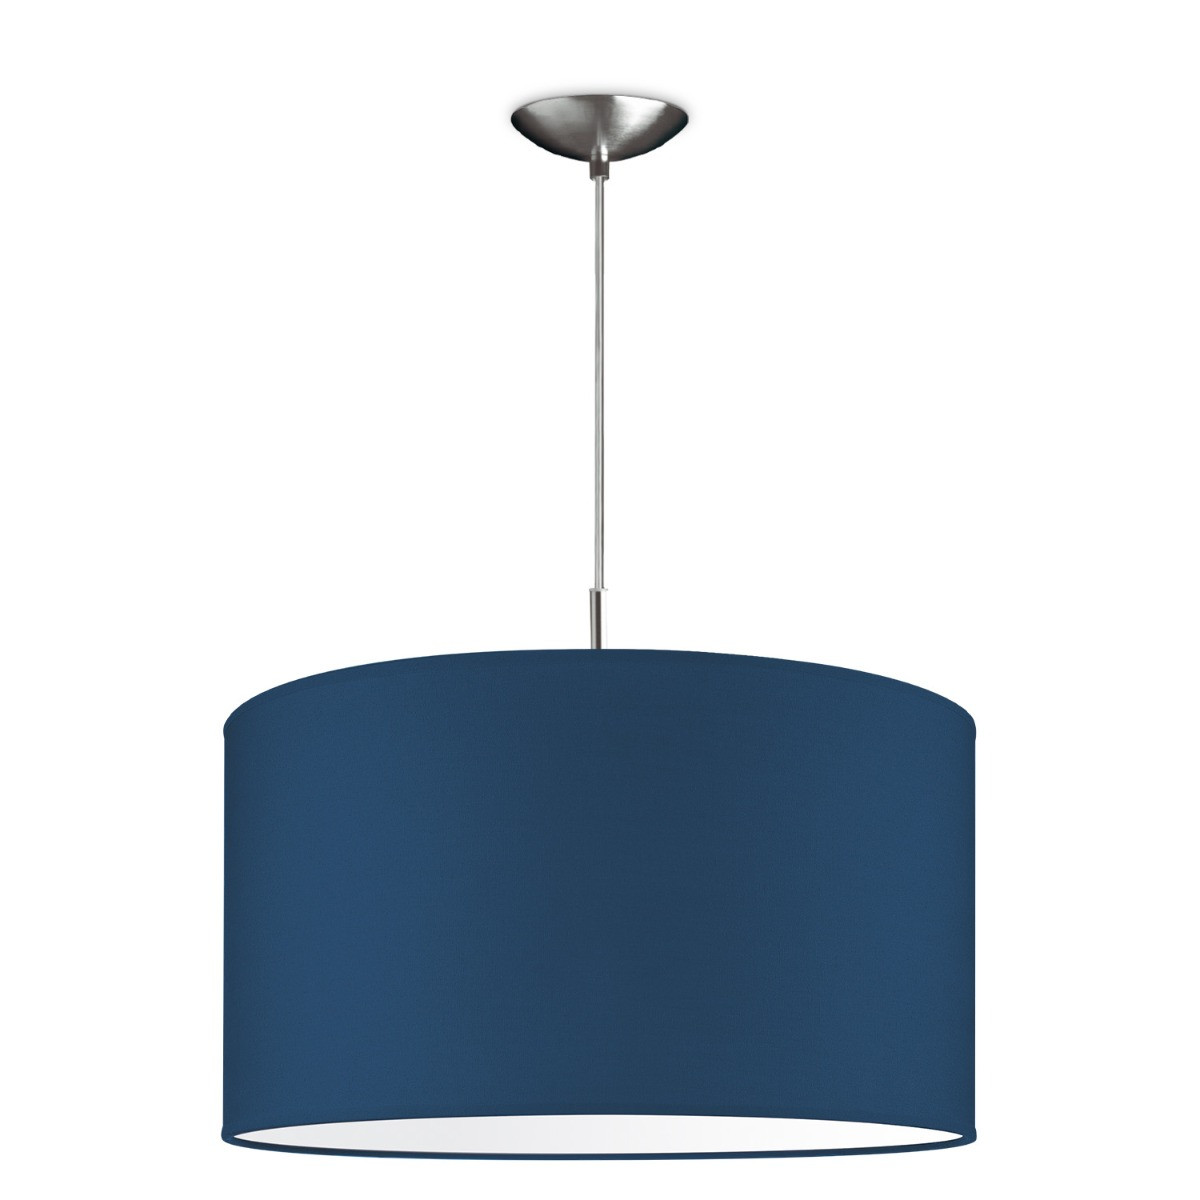 Light depot - hanglamp tube deluxe bling Ø 45 cm - blauw - Outlet